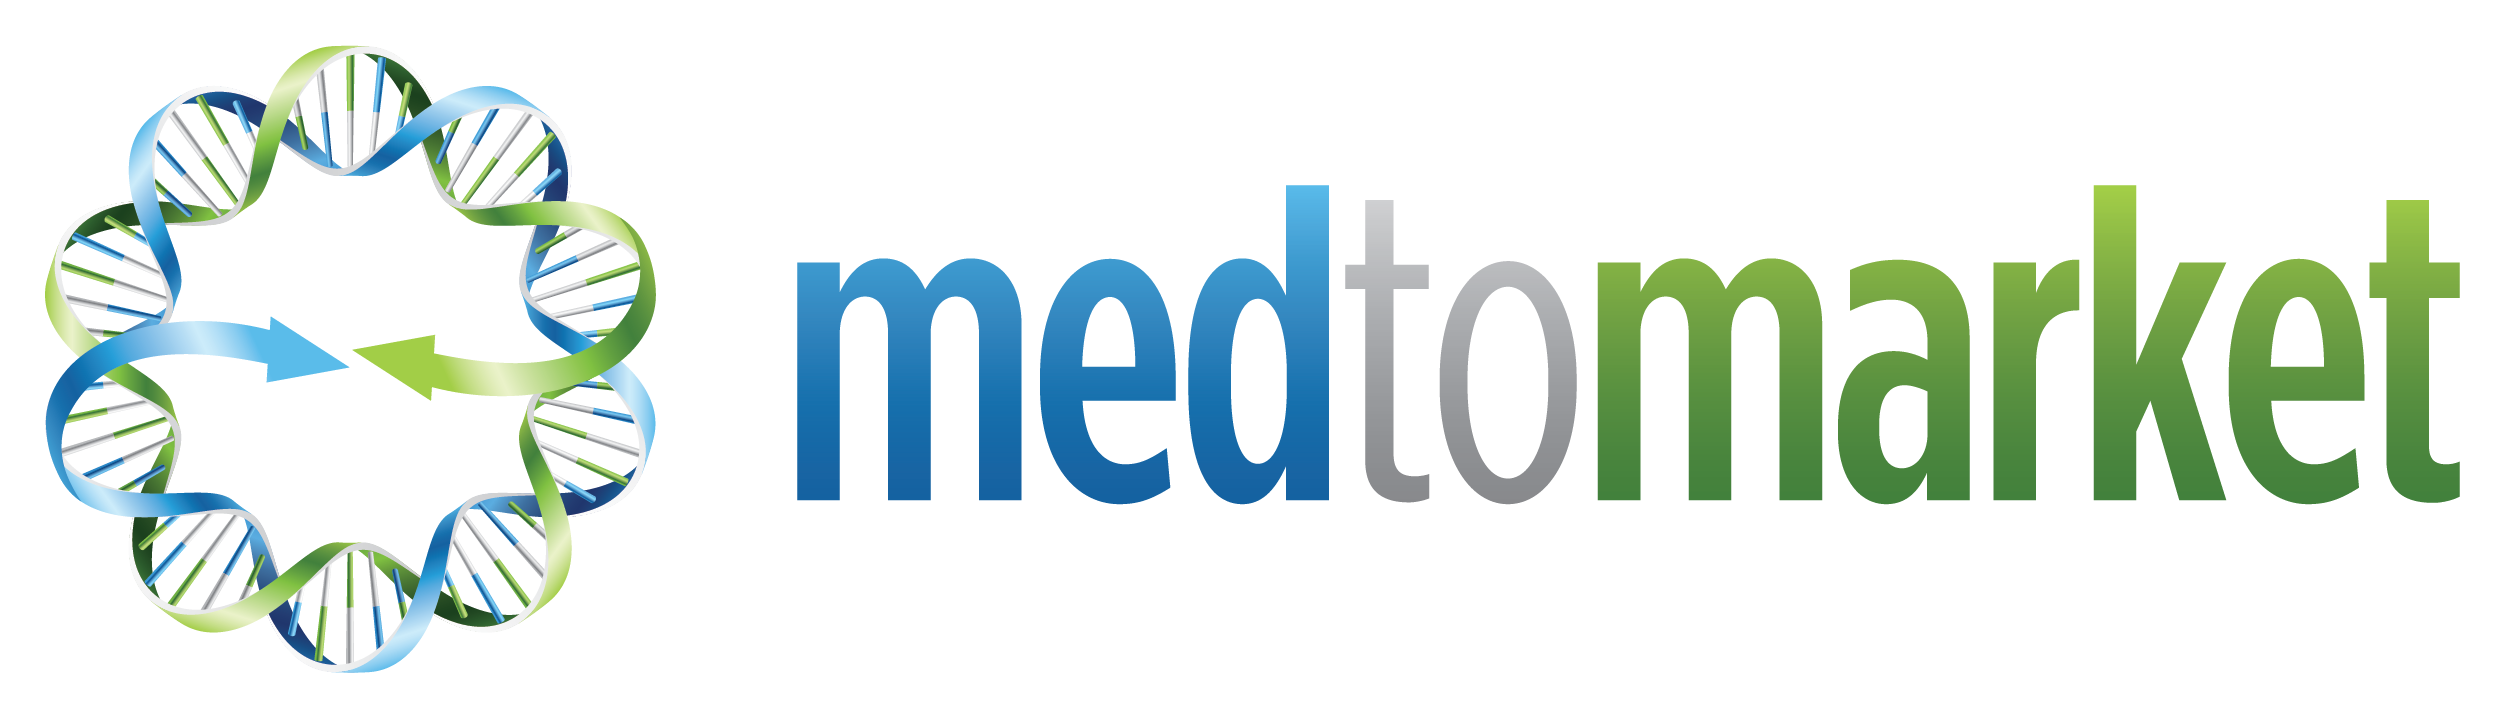 MedtoMarket logo